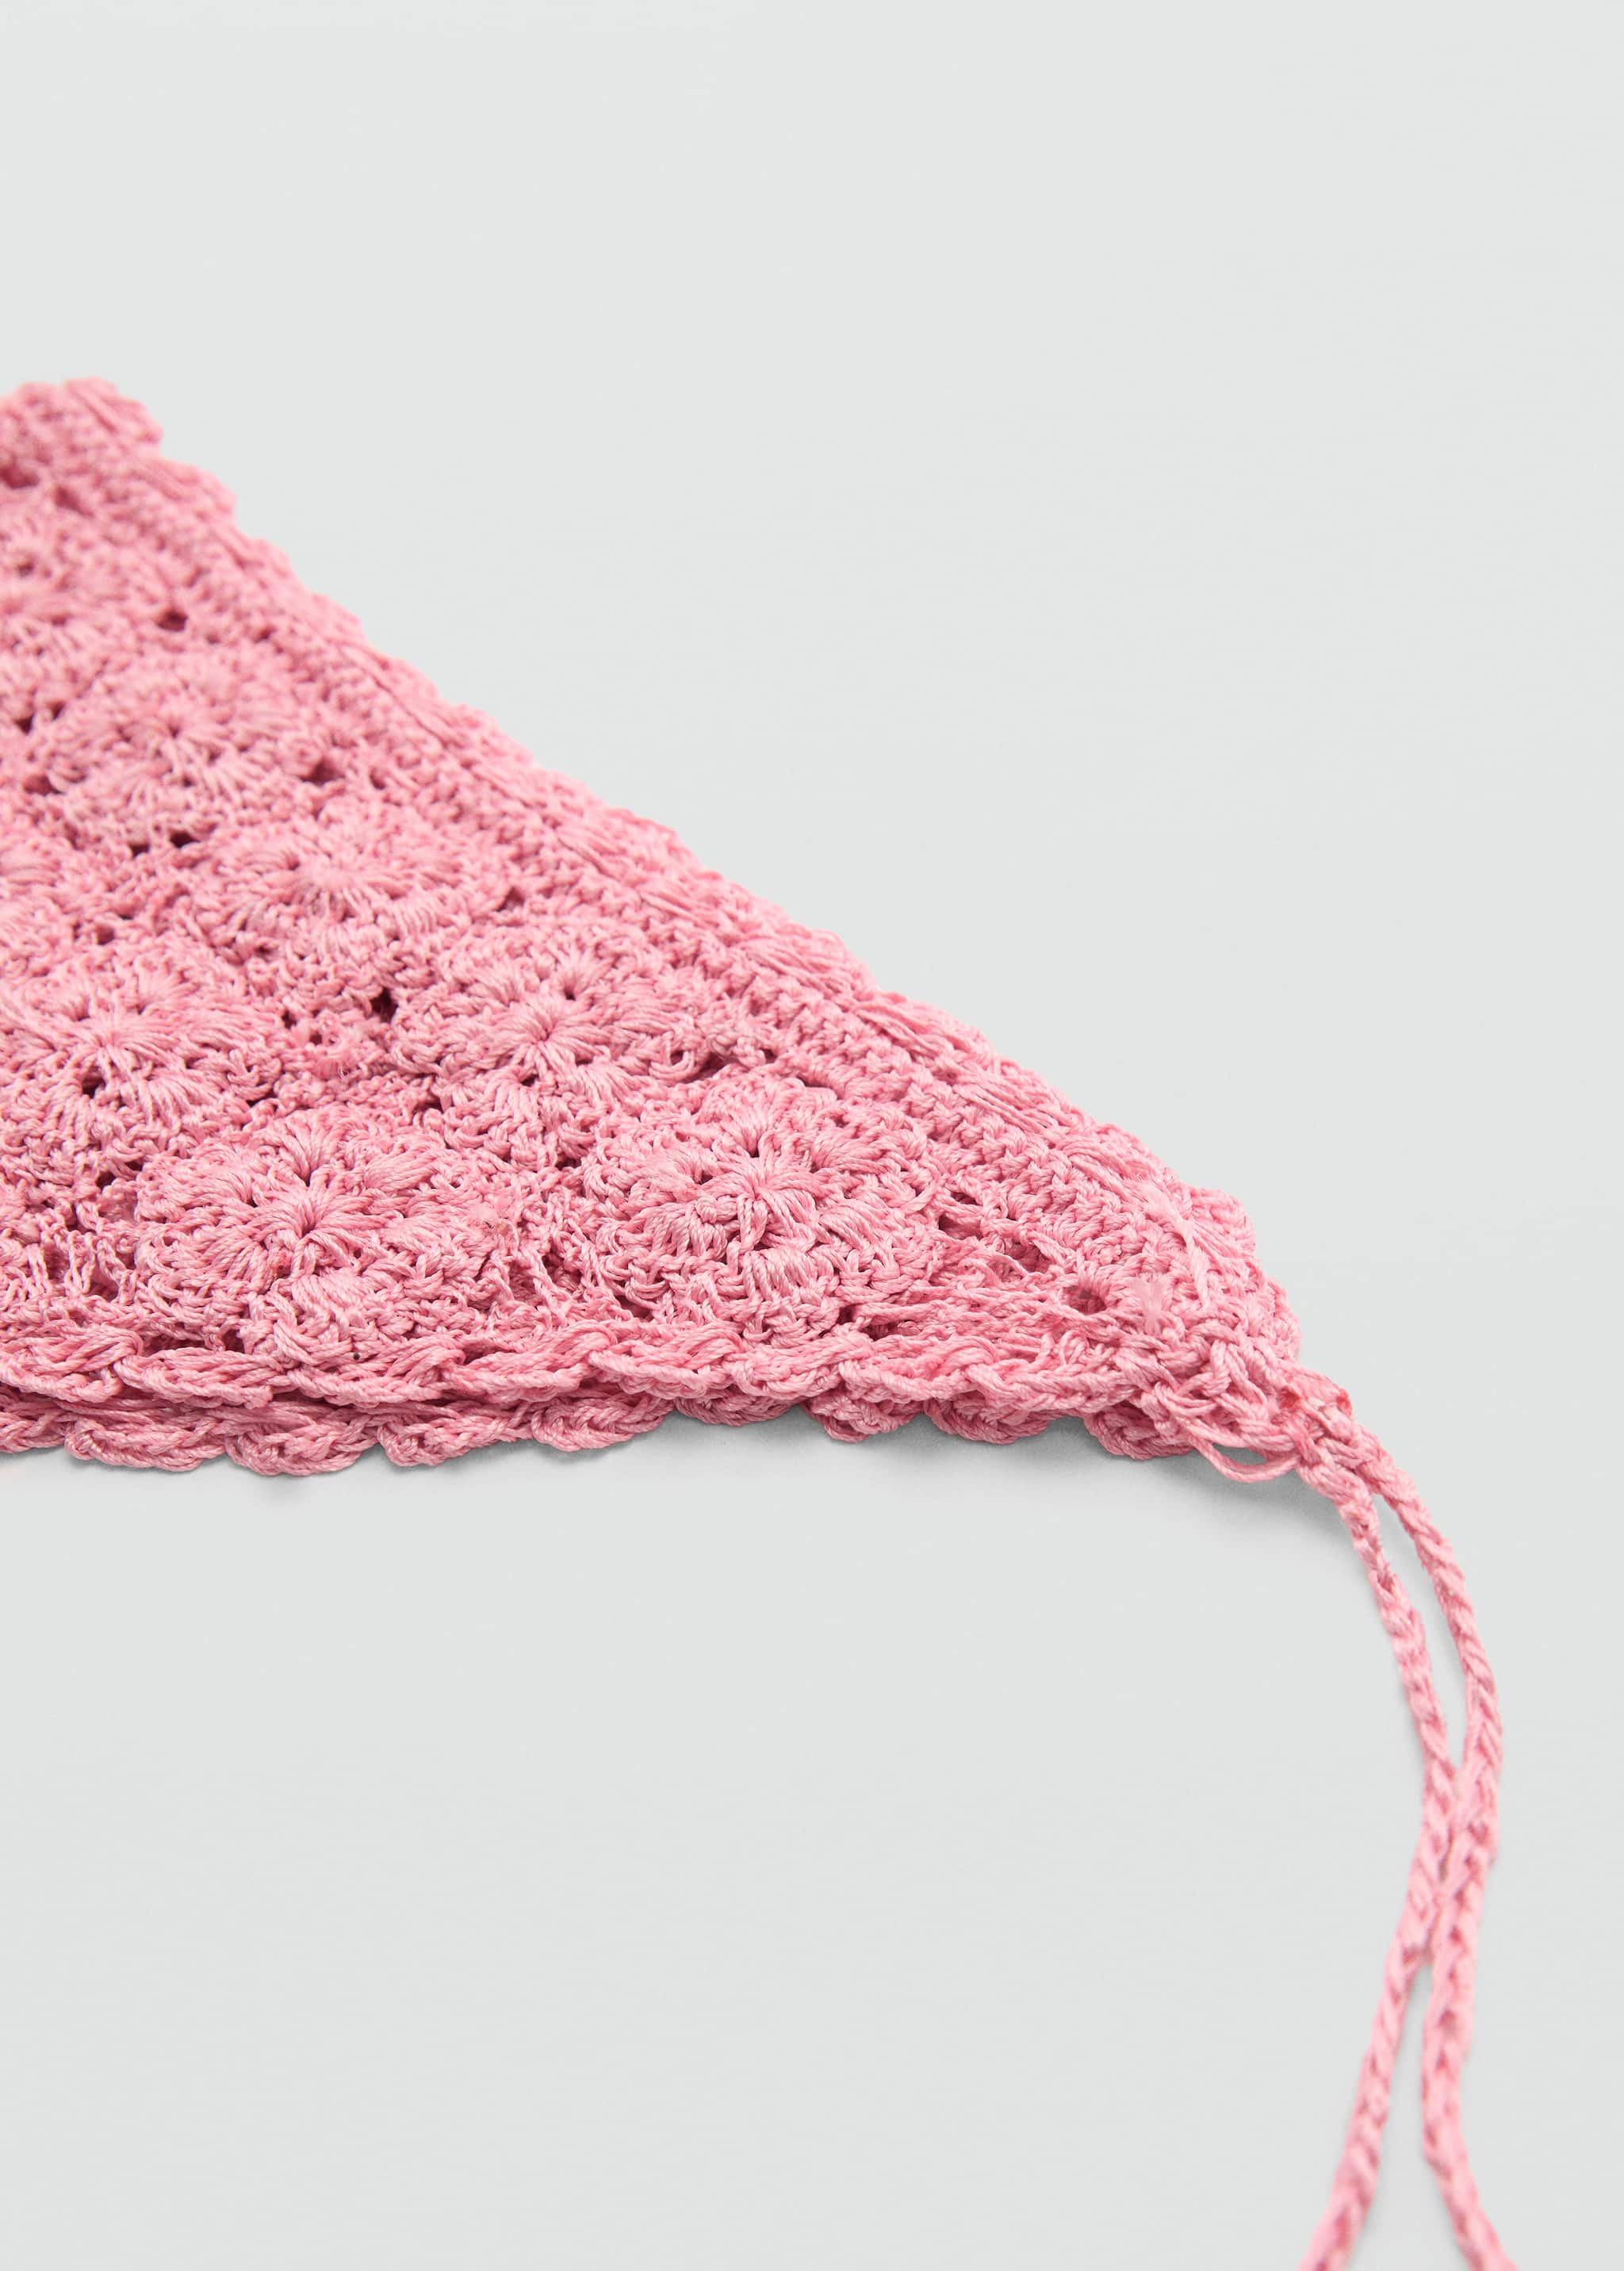 Crochet knit handkerchief - Medium plane